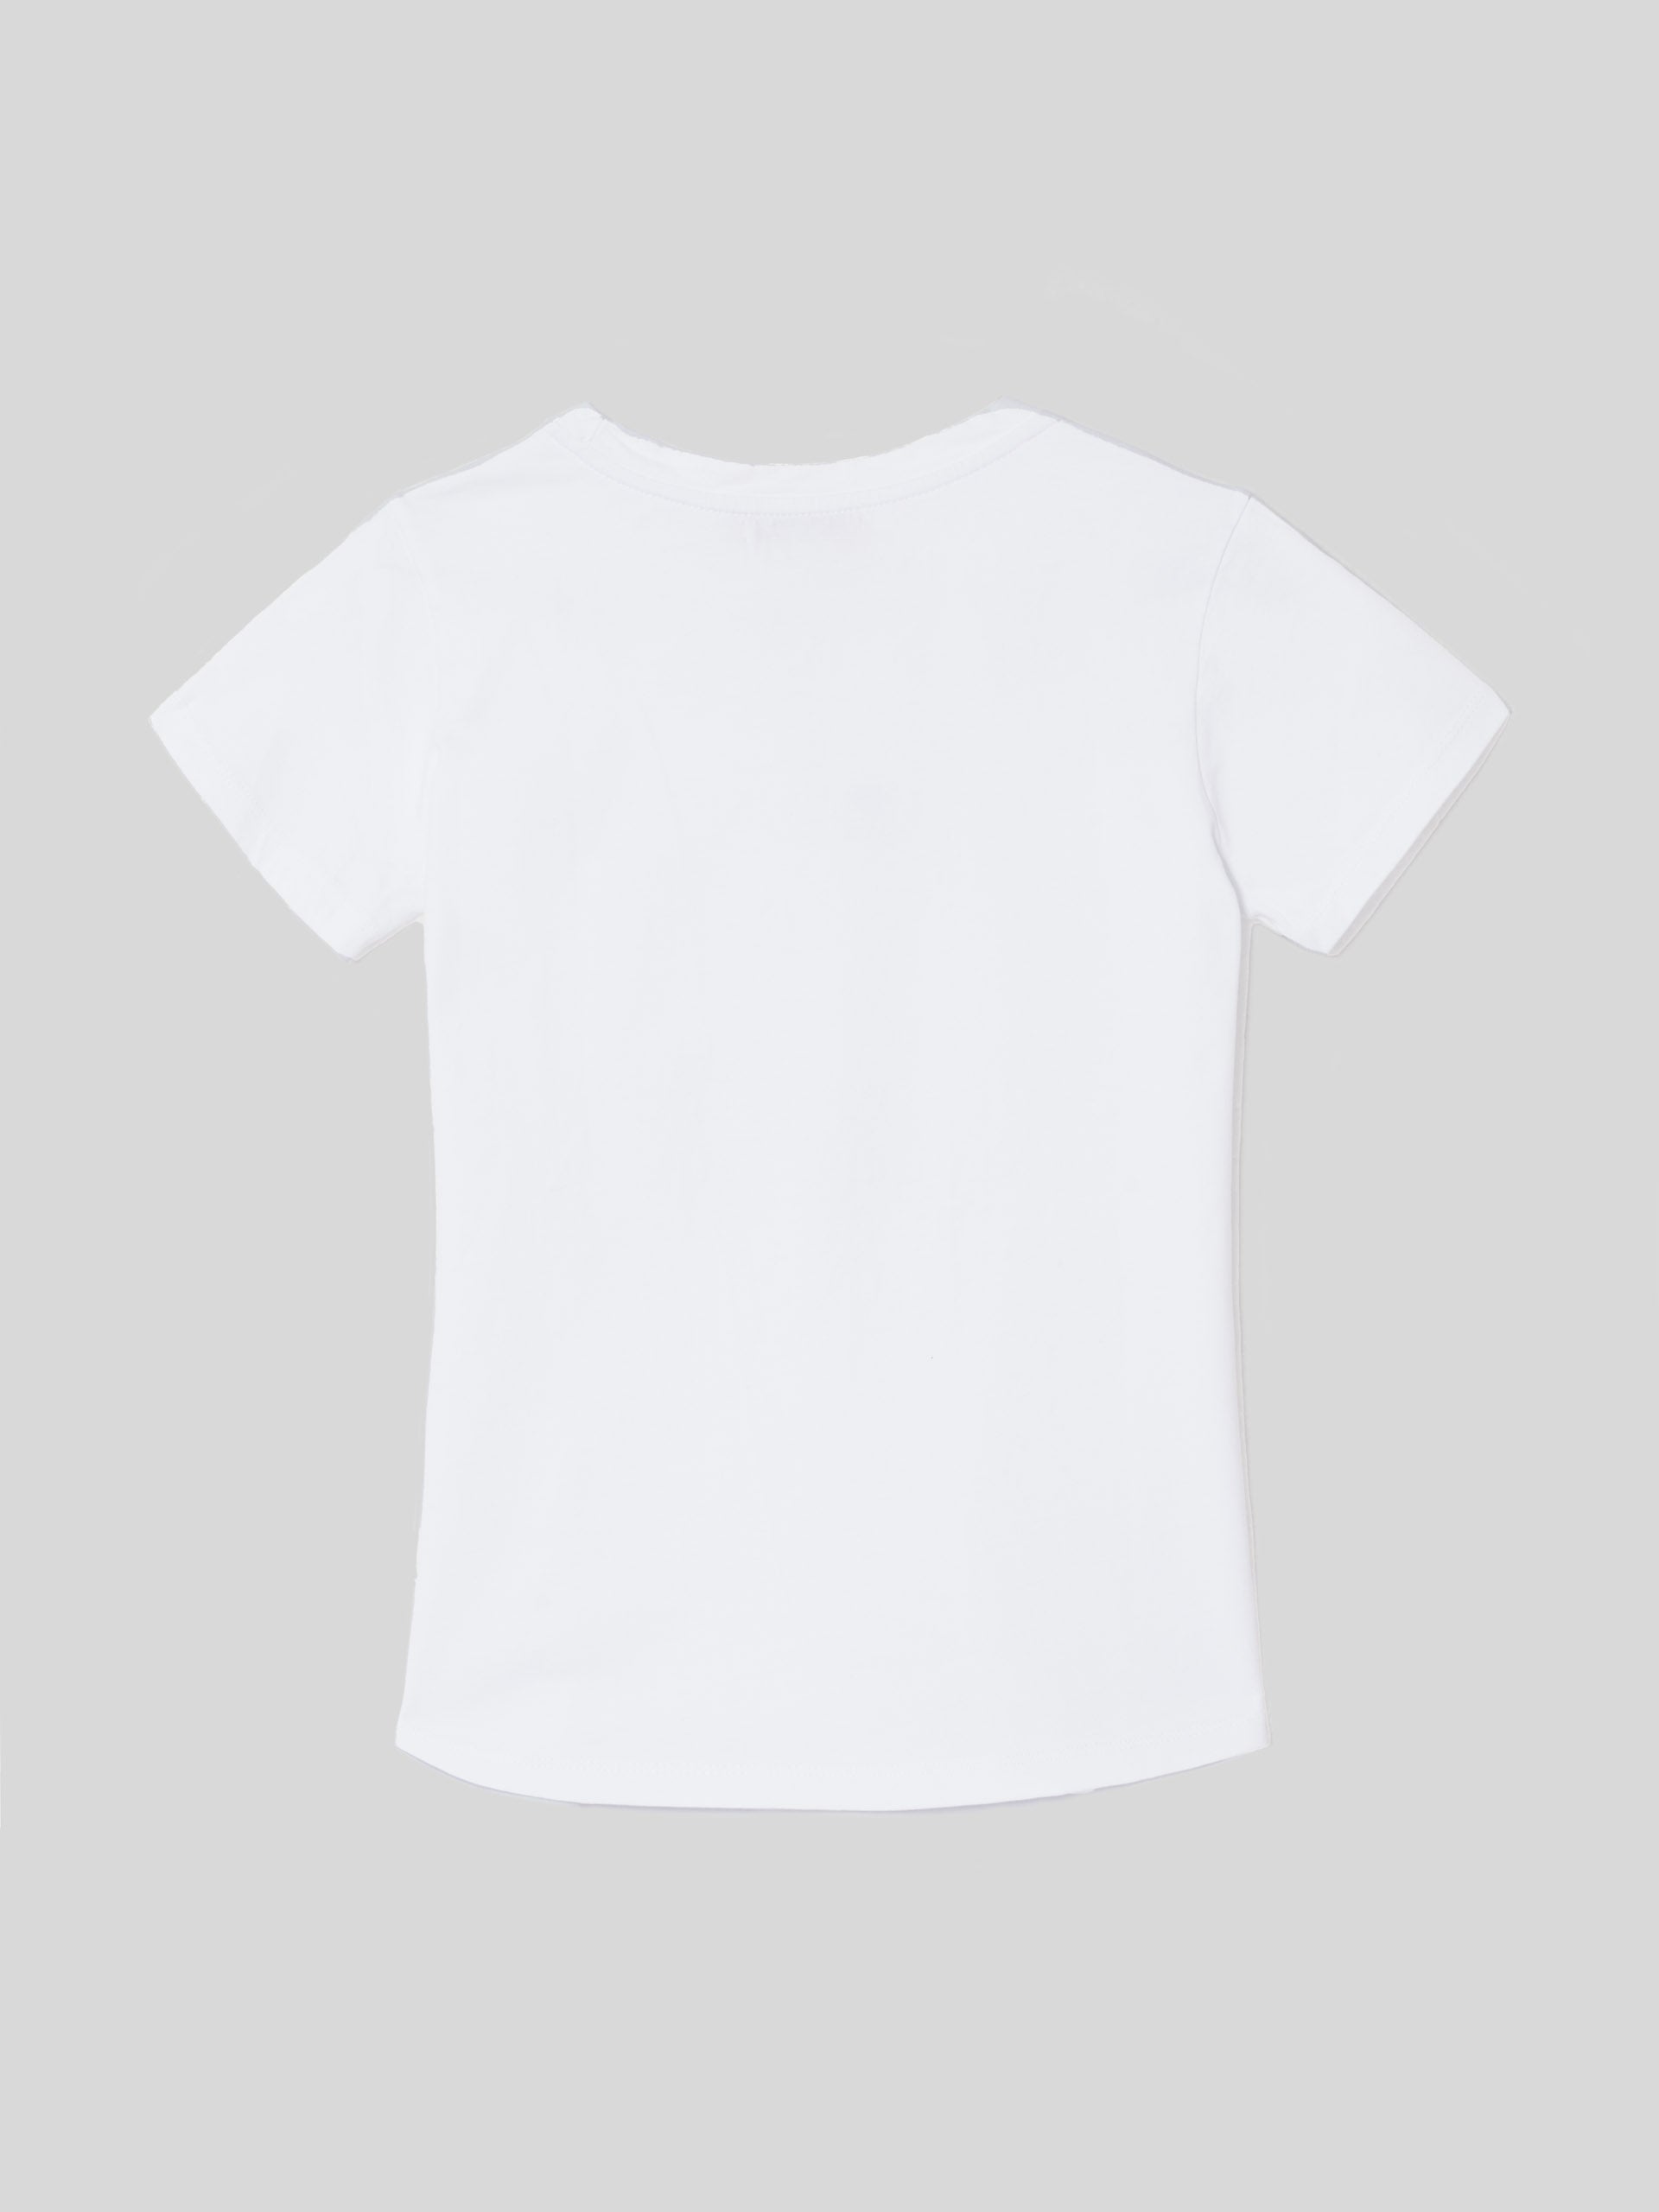 Camiseta woman clasica blanca